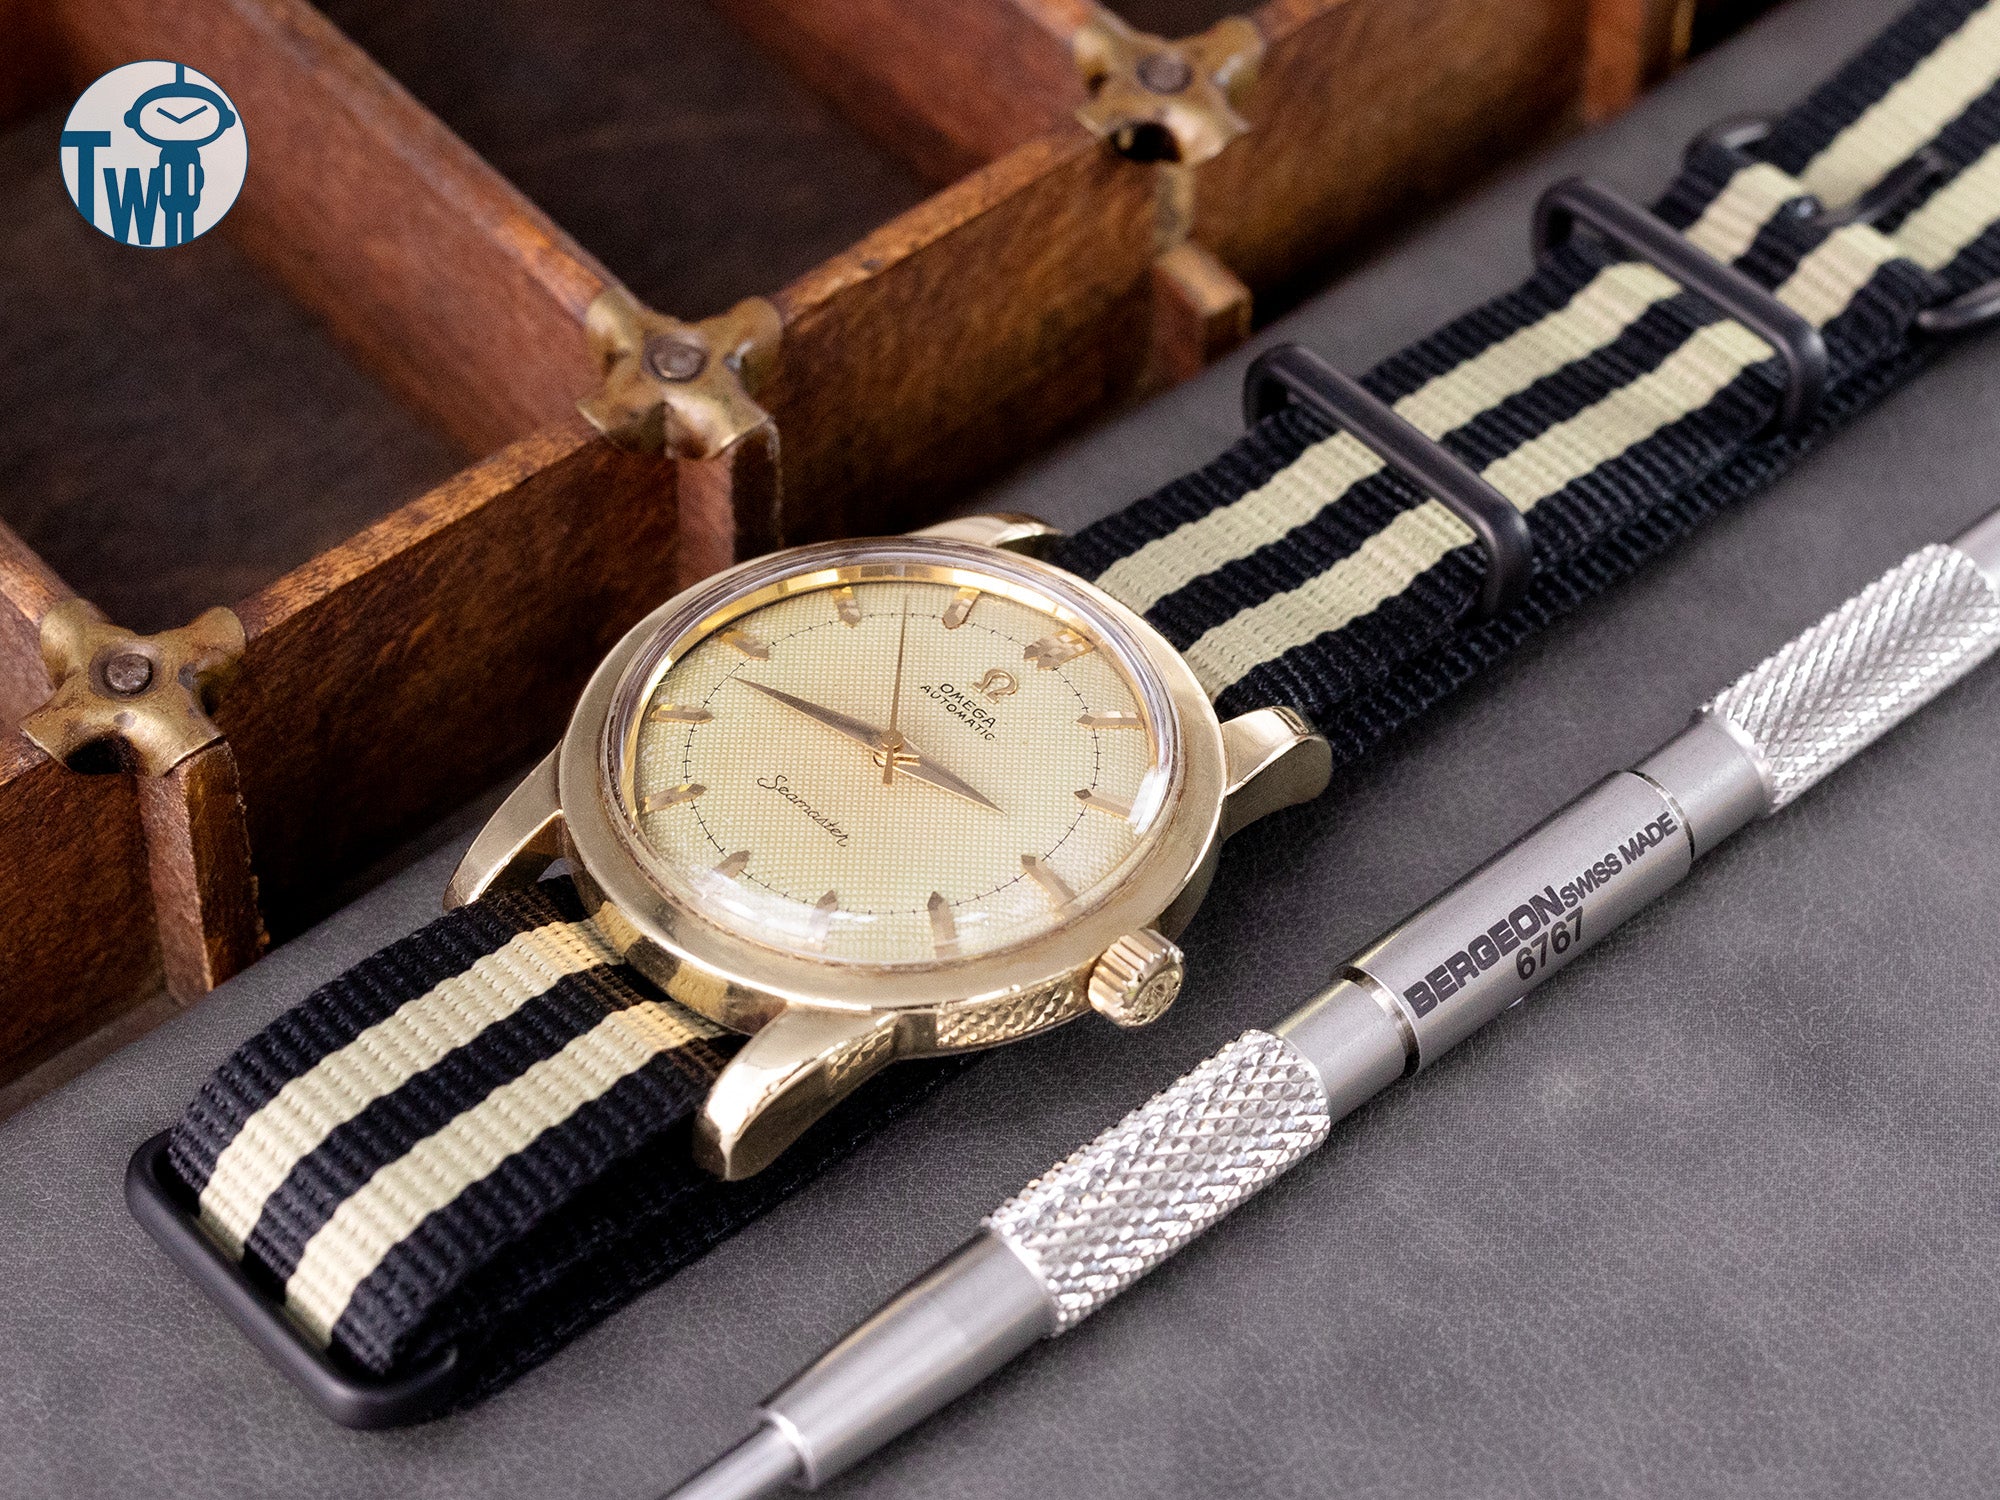 這是一枚配戴 太空人腕時計TW 品牌 Nato錶帶的 1952年 Omega歐米茄 包金錶身的 Seamaster海馬系列，搭載 Cal.354 撞錘自動機芯。